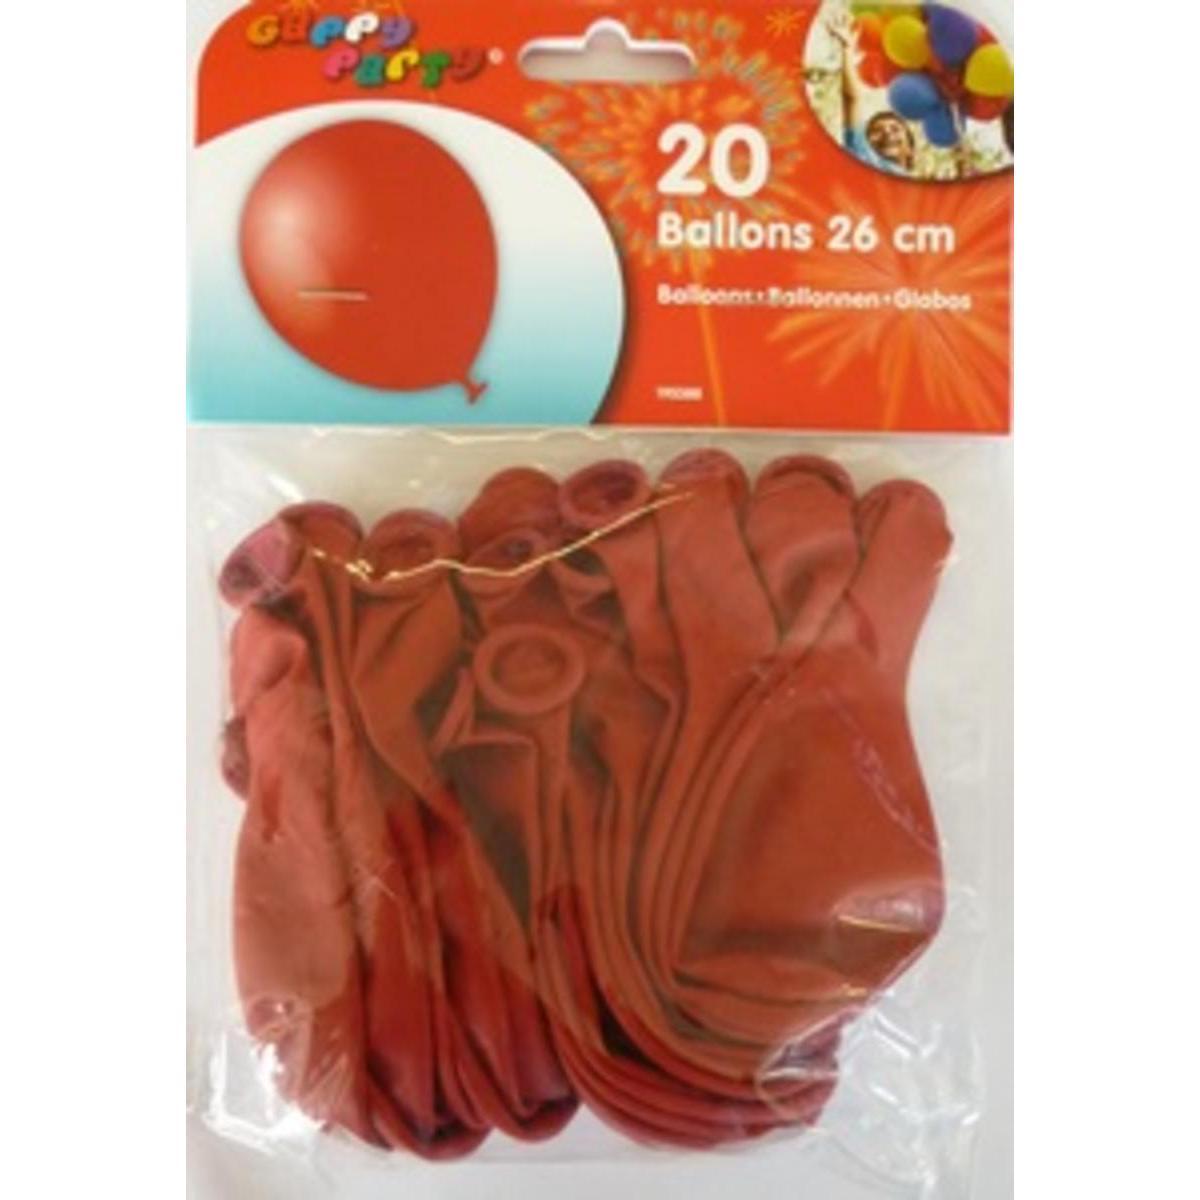 Ballons 25 cm rougex 20 pièces Gappy party